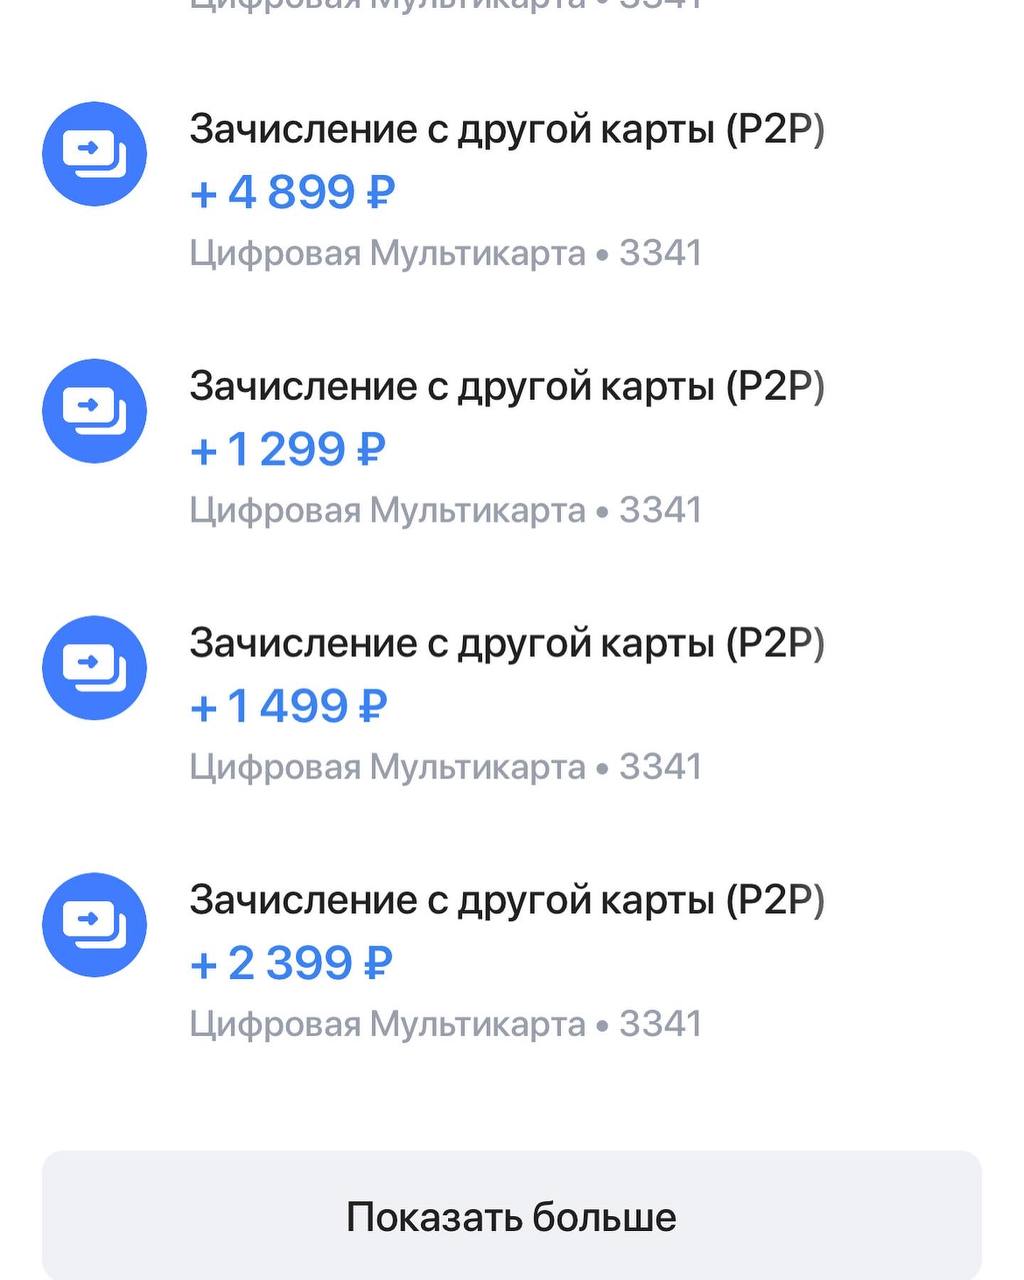 Телеграмм заработок без вложений на русском языке фото 58